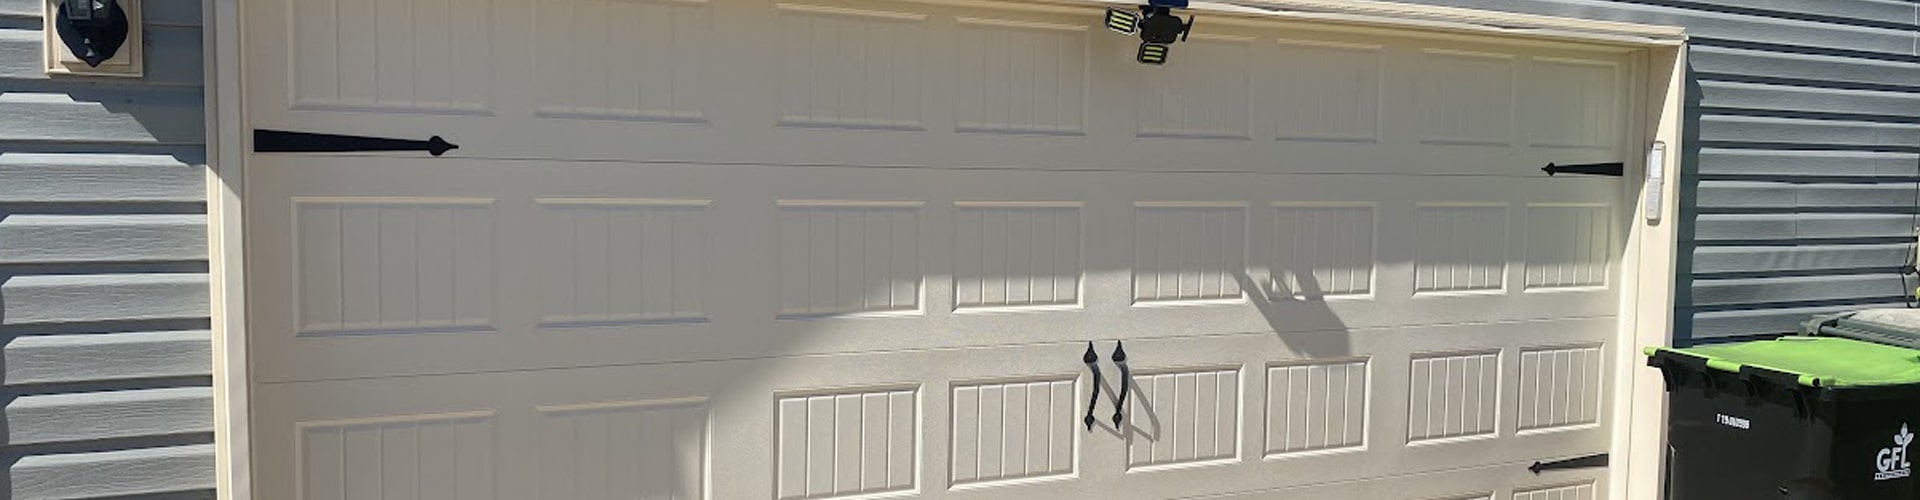 Professional Garage Door Repair Services in Thomaston, GA